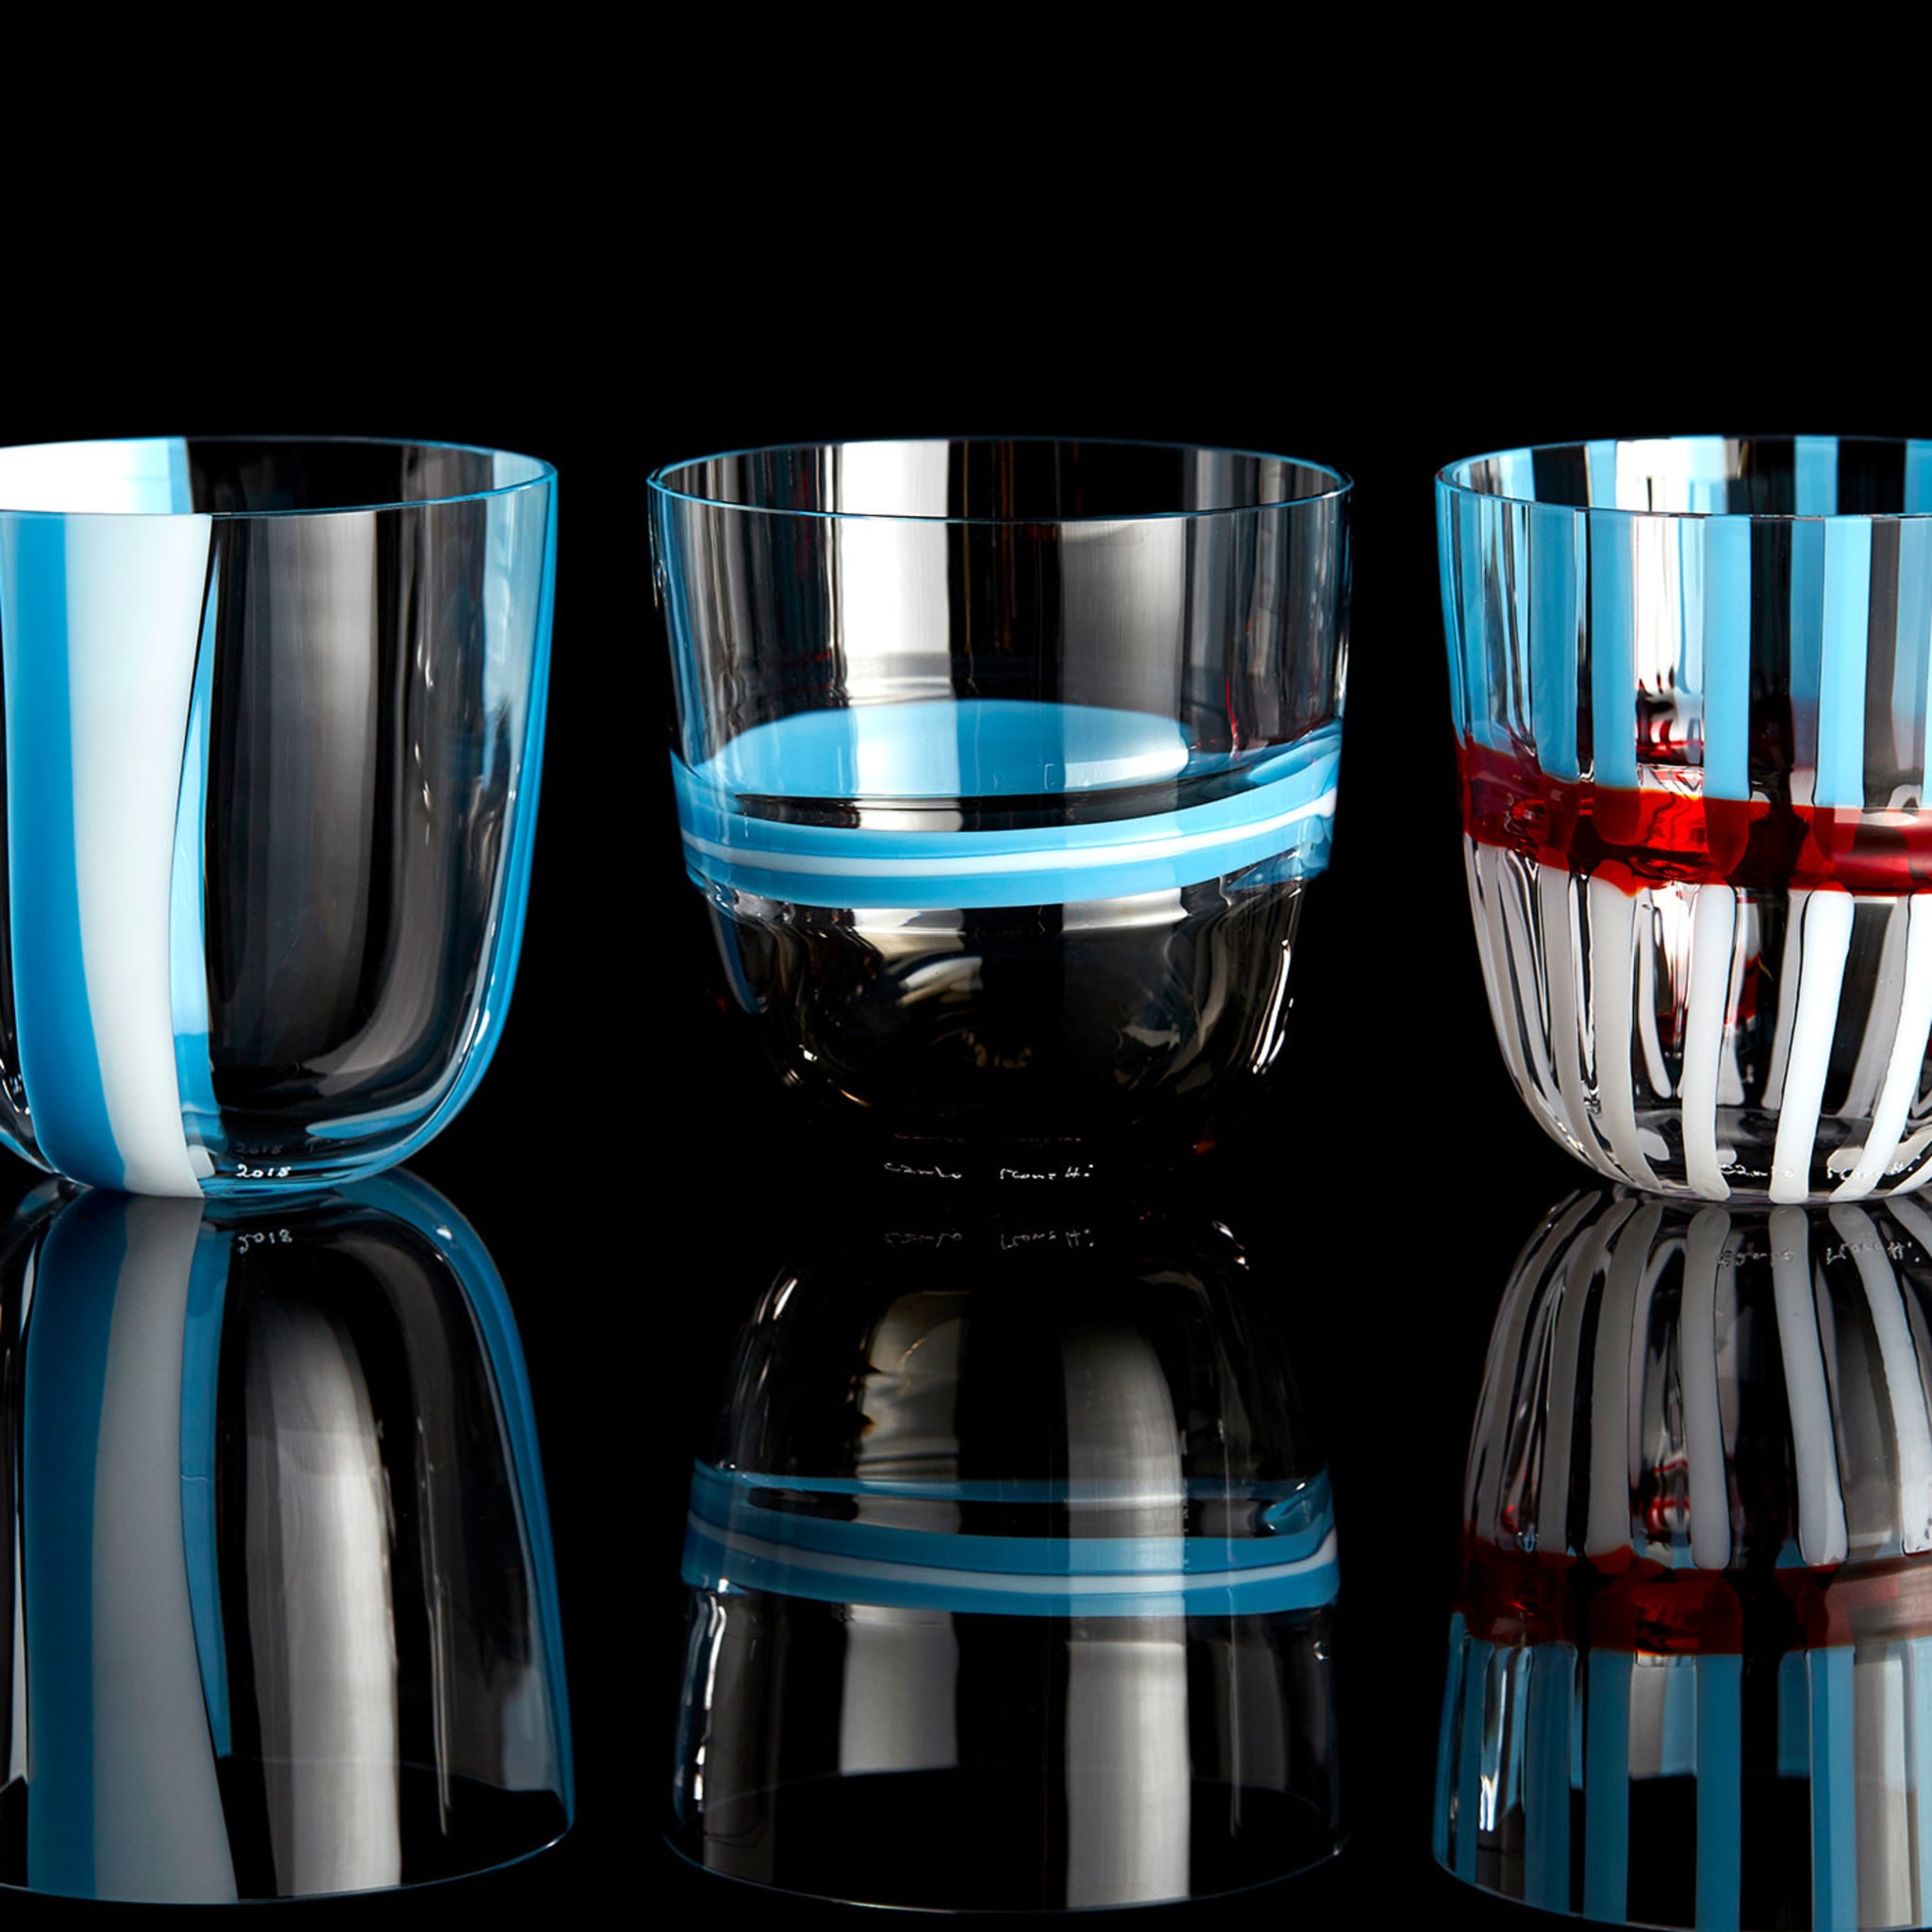 I Diversi Set of 6 Blue Glasses N. 1 - Alternative view 1